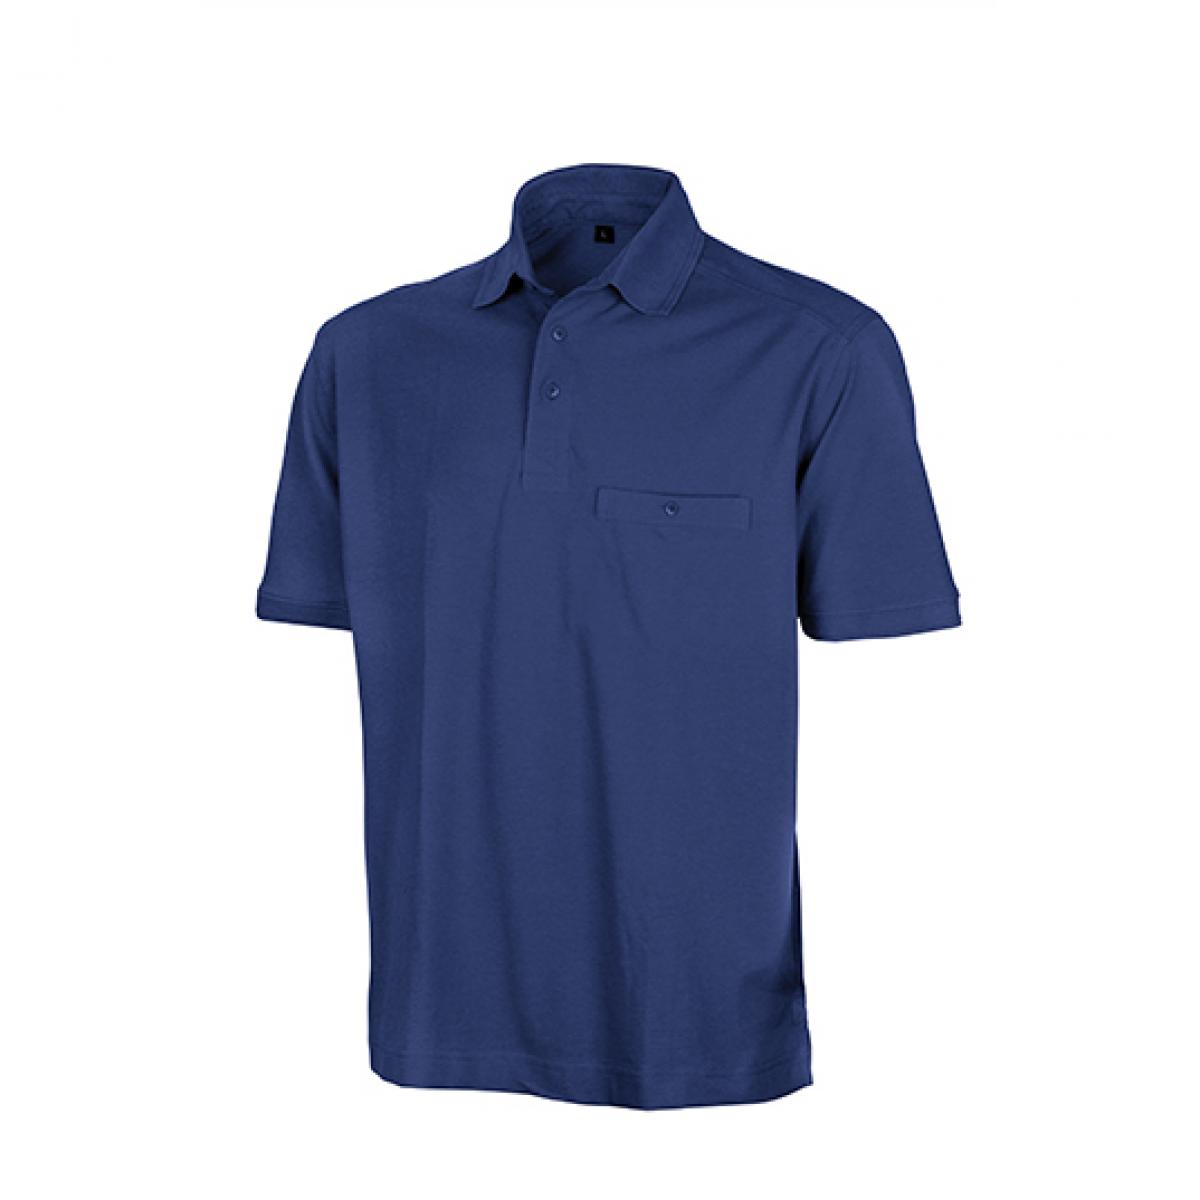 Hersteller: Result WORK-GUARD Herstellernummer: R312X Artikelbezeichnung: Herren Apex Polo Shirt / Strapazierfähig aus Mischgewebe Farbe: Royal